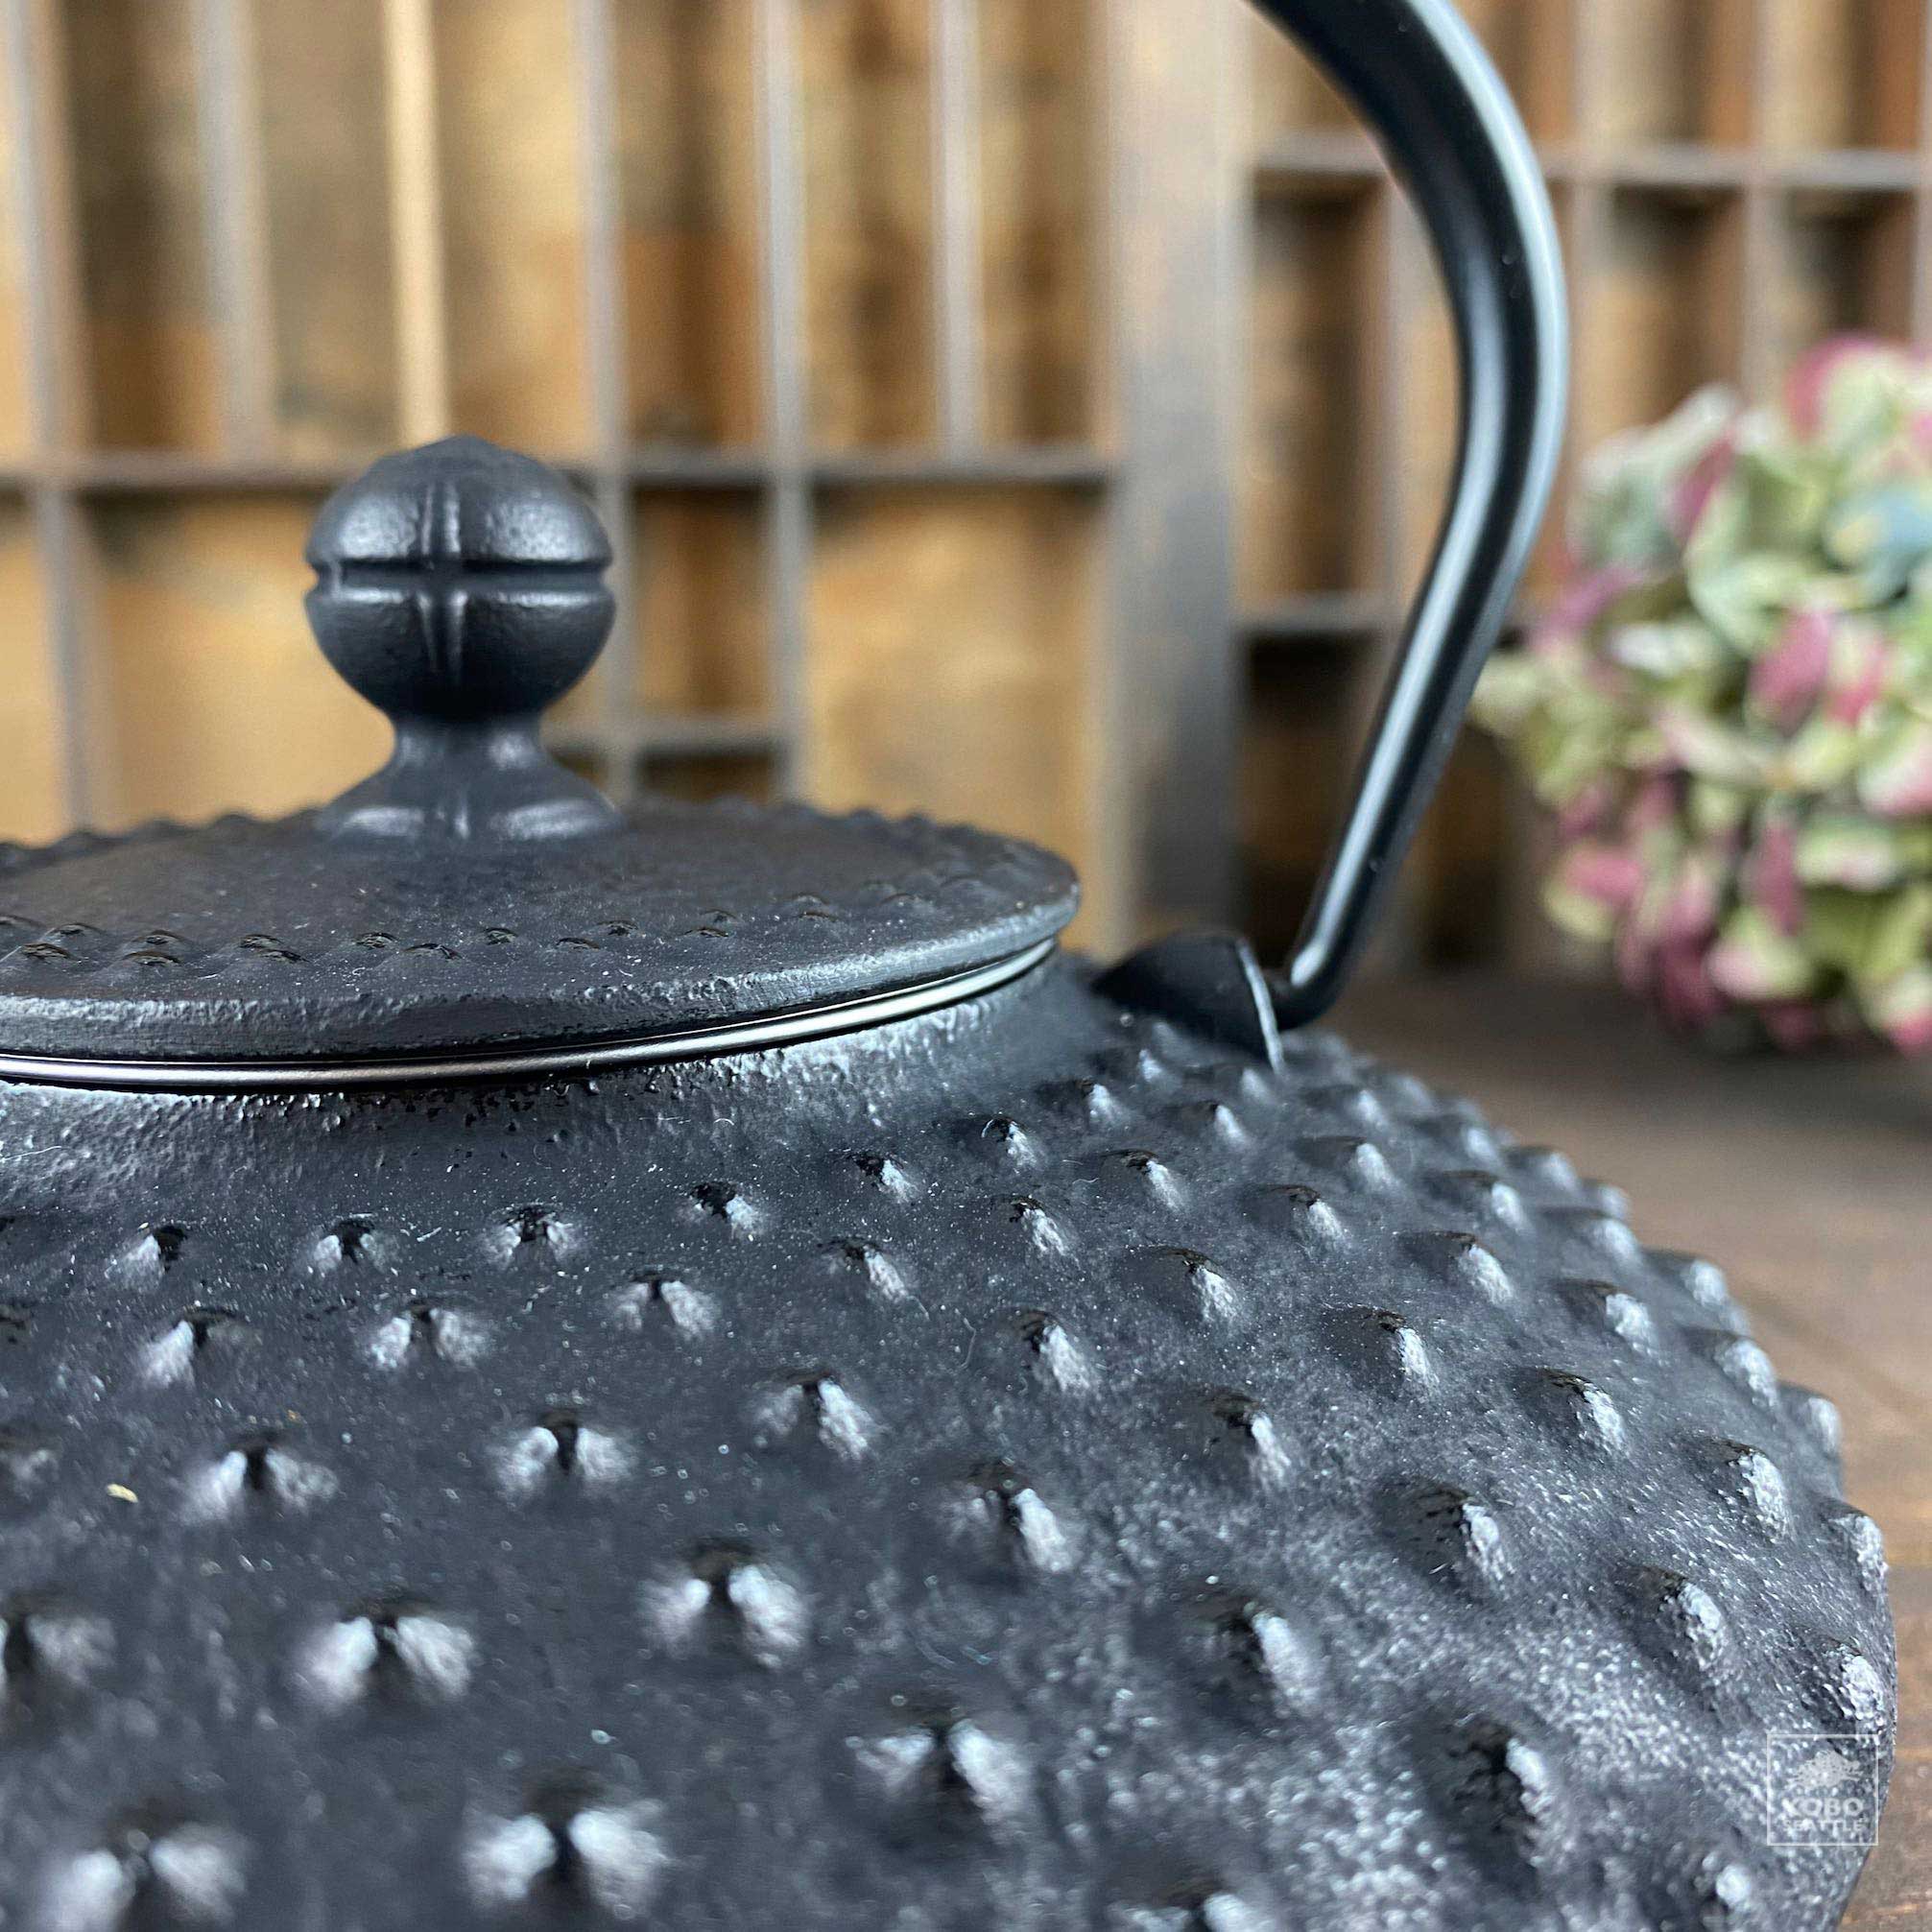 Cast Iron Flat Hailstone Teapot - KoboSeattle